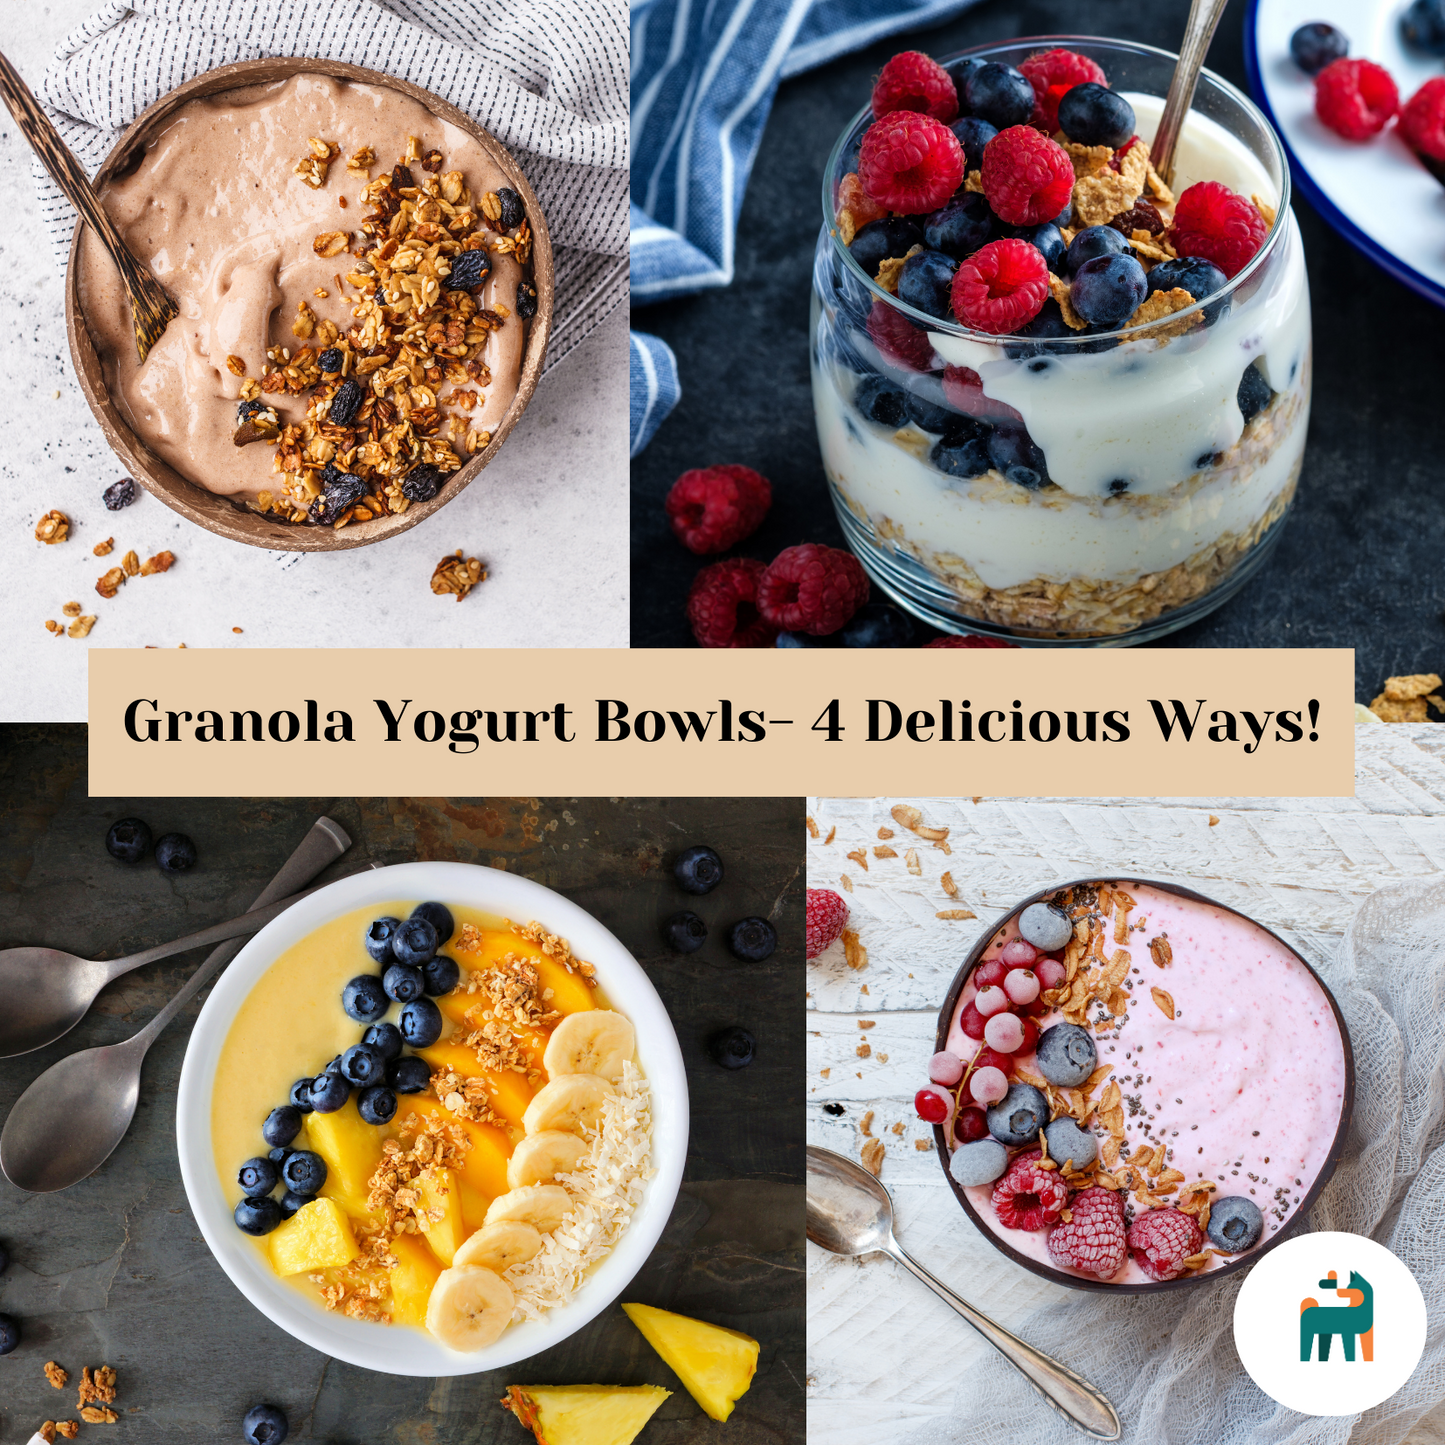 Granola Yogurt Bowls- 4 Delicious Ways!